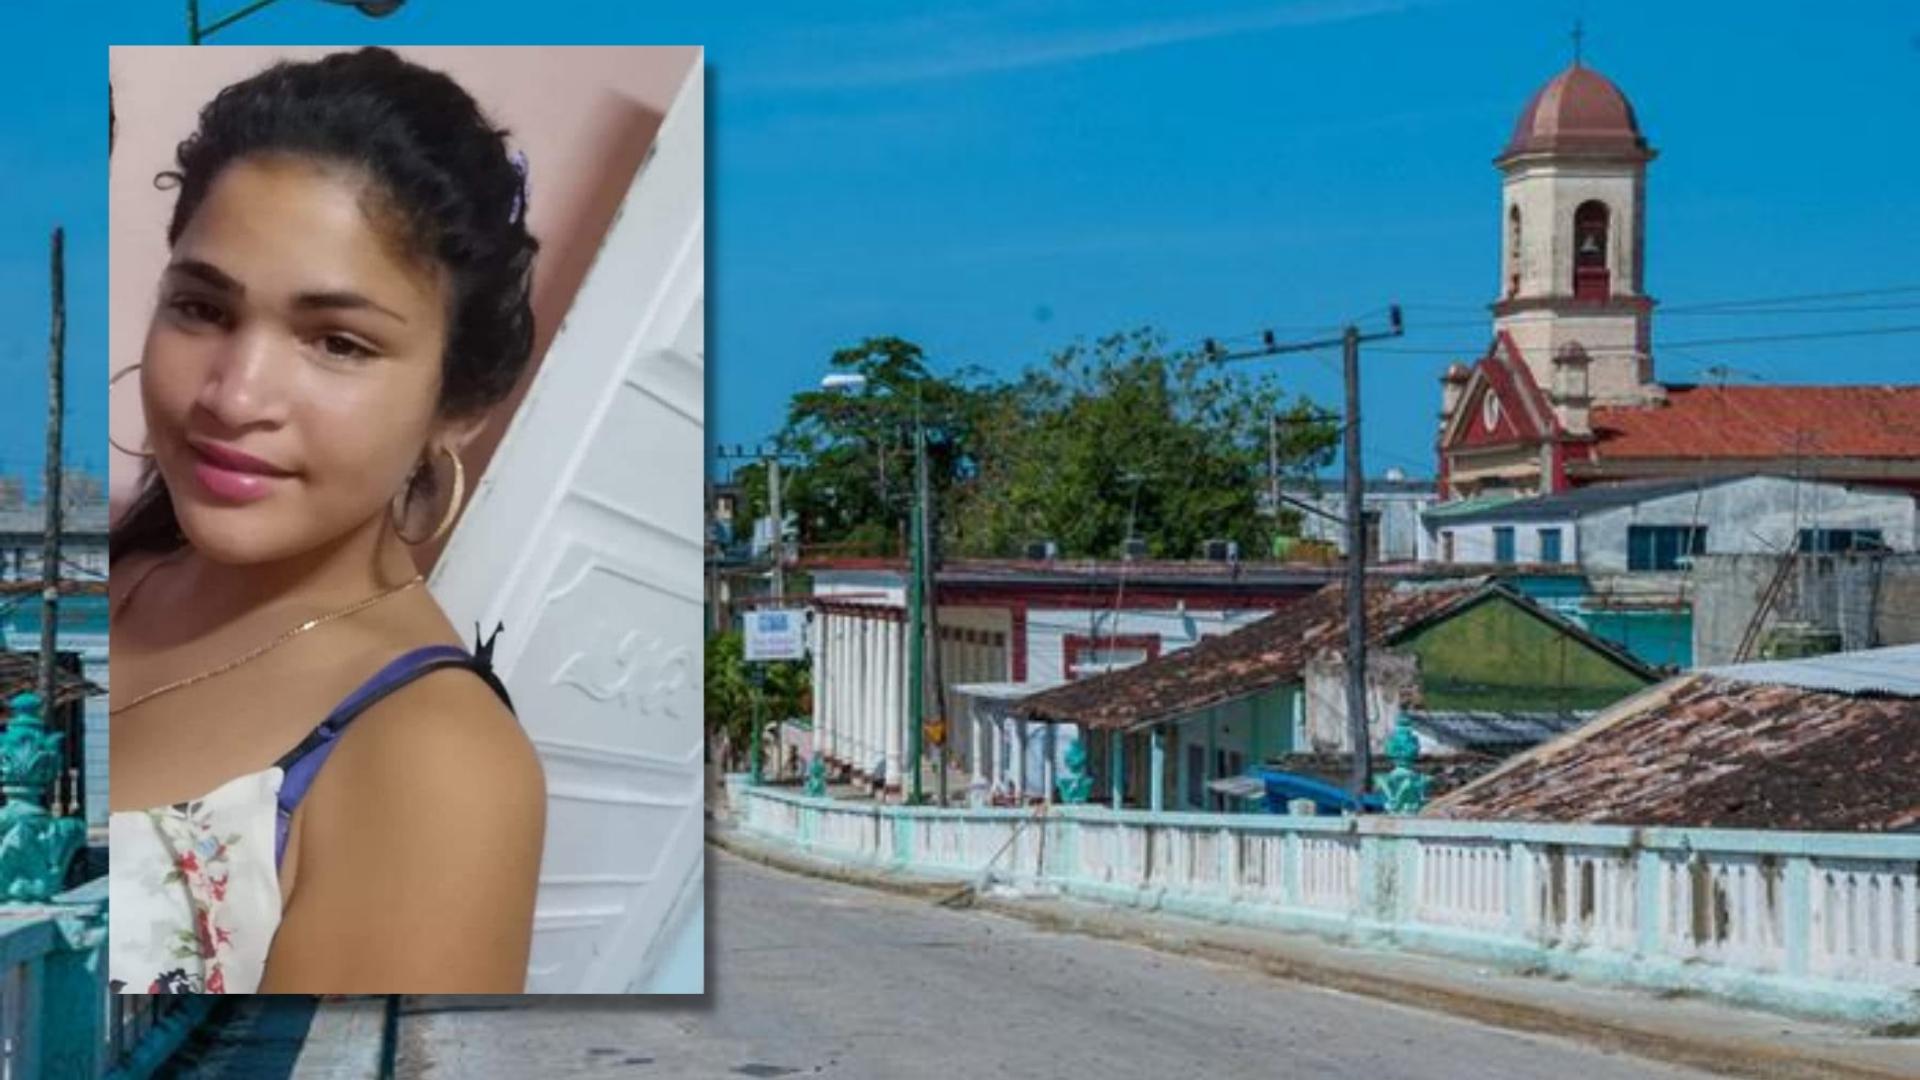 Reportan desaparición de adolescente en Cuba